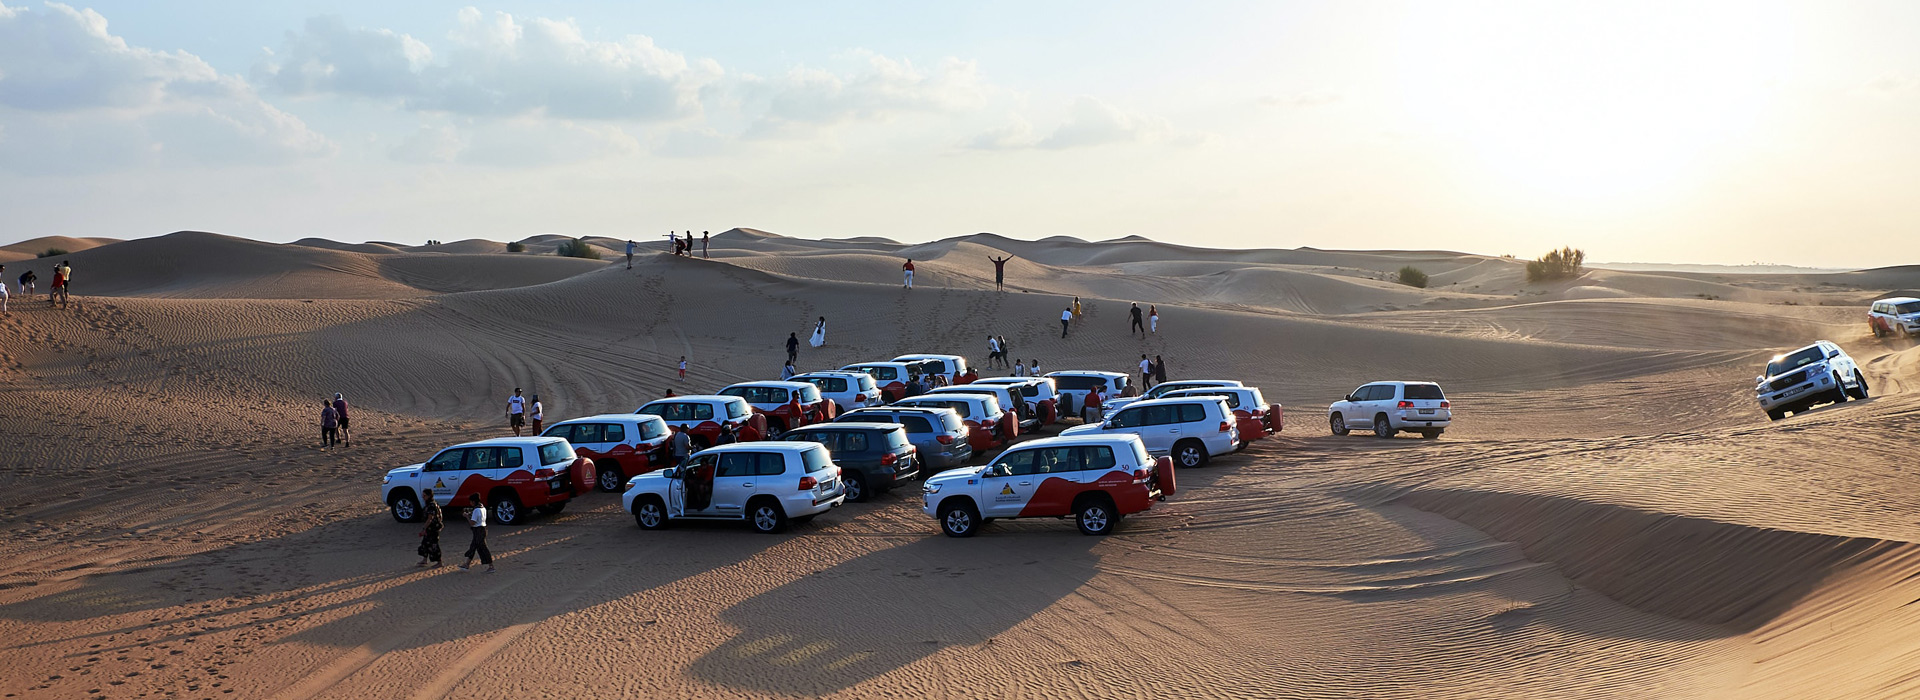 Desert safari in Sharjah | Desert safari in Dubai